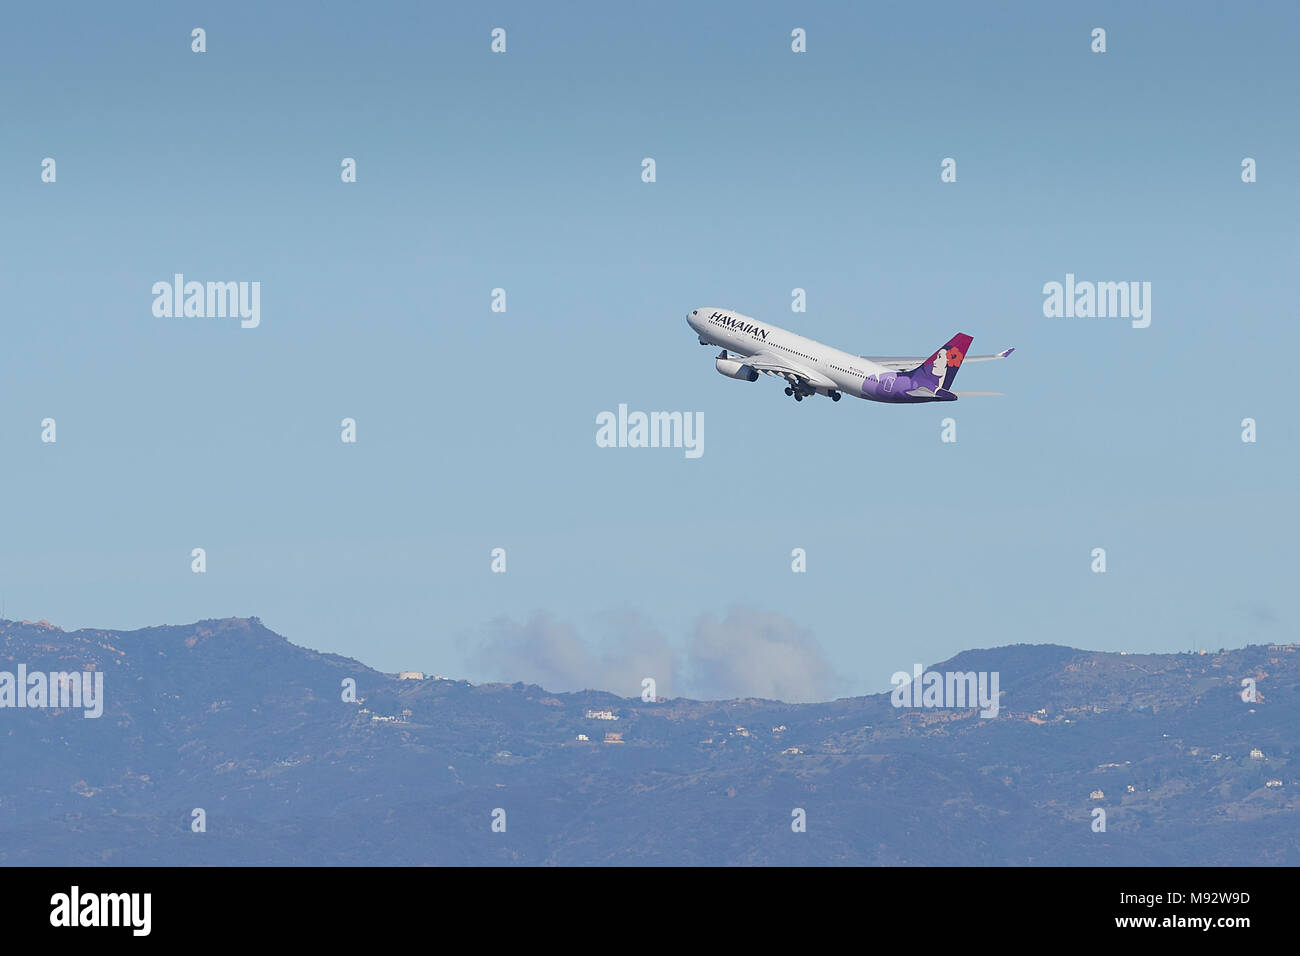 Hawaiian Airlines Airbus A330-200 Jet passagers décollant de l'Aéroport International de Los Angeles, LAX, Californie, USA. Banque D'Images